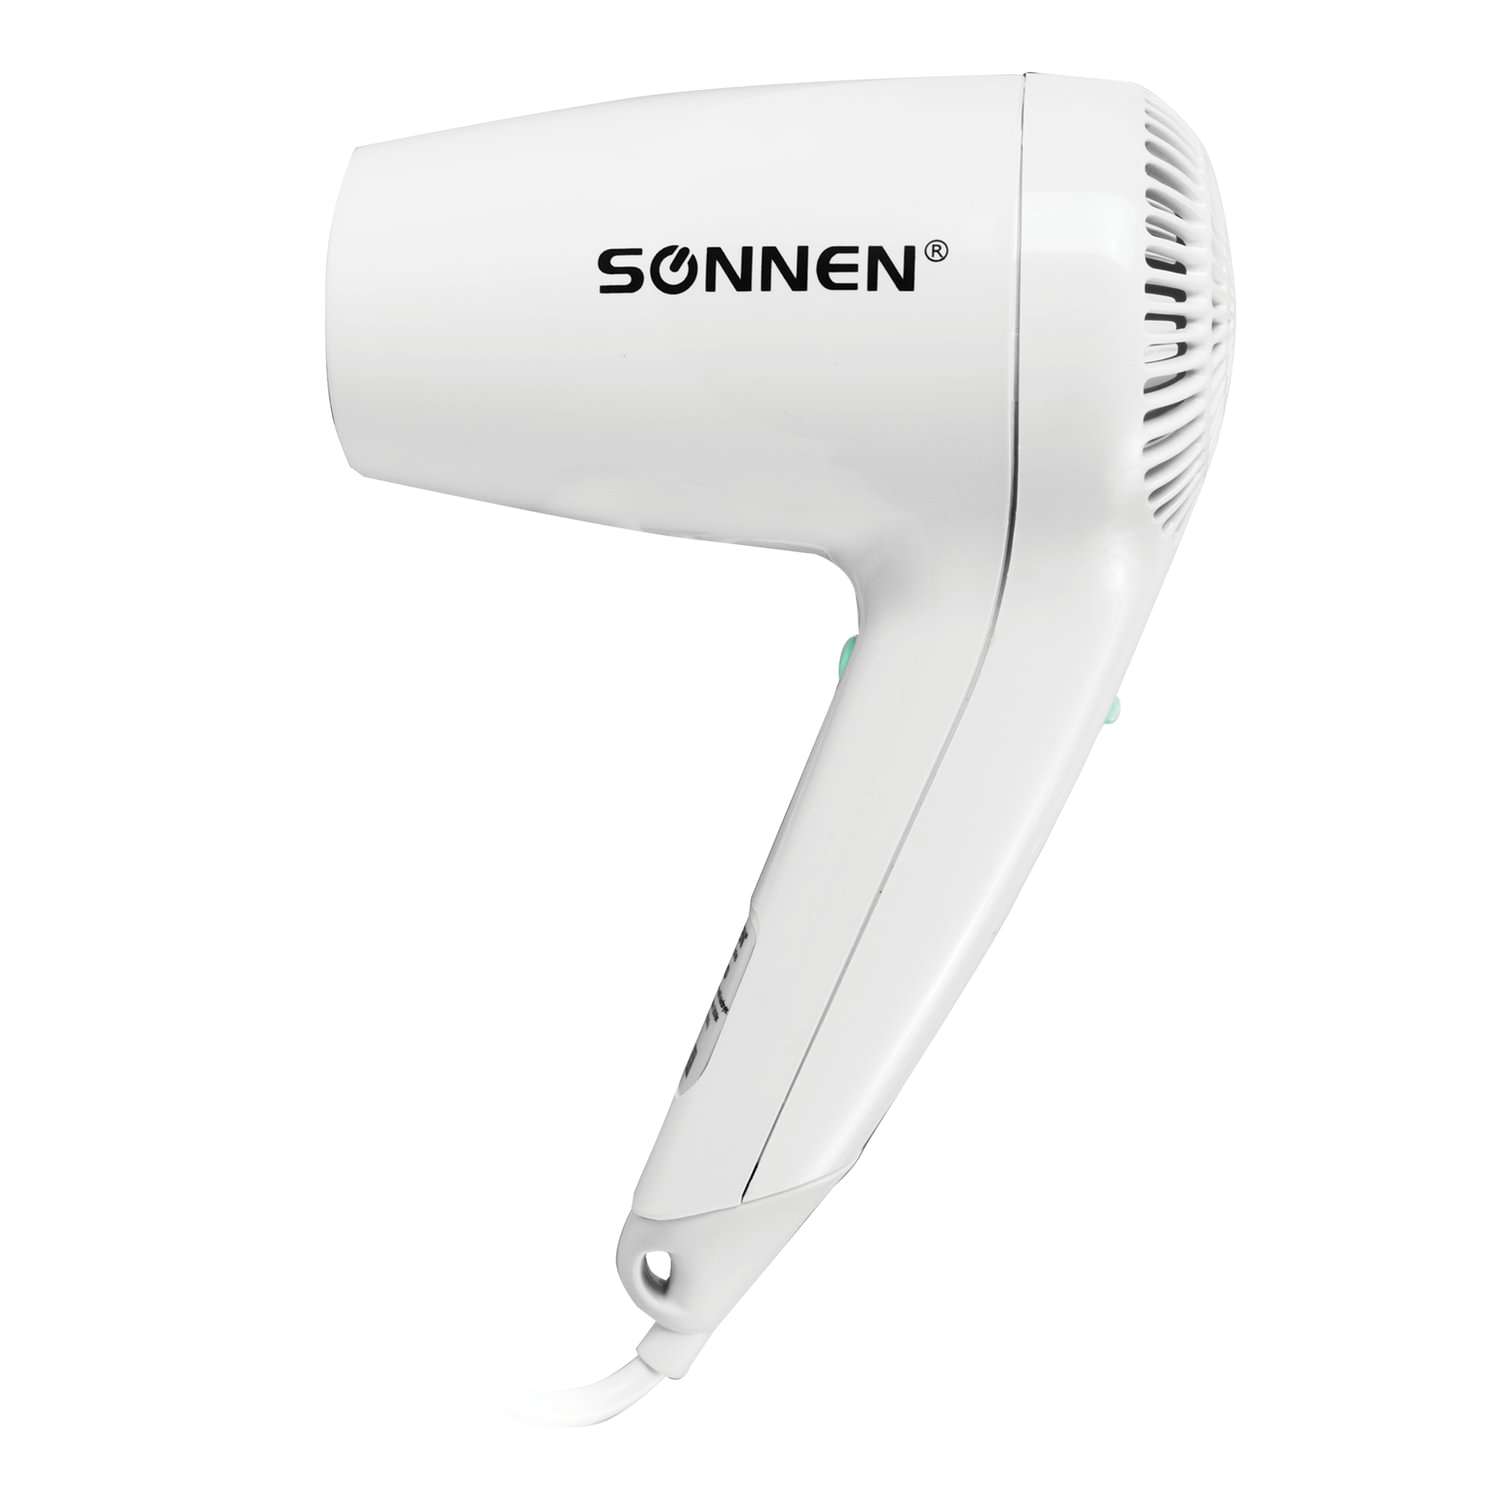 Фен Sonnen настенный для сушки и укладки волос 1200 Вт 4 скорости - фото 9